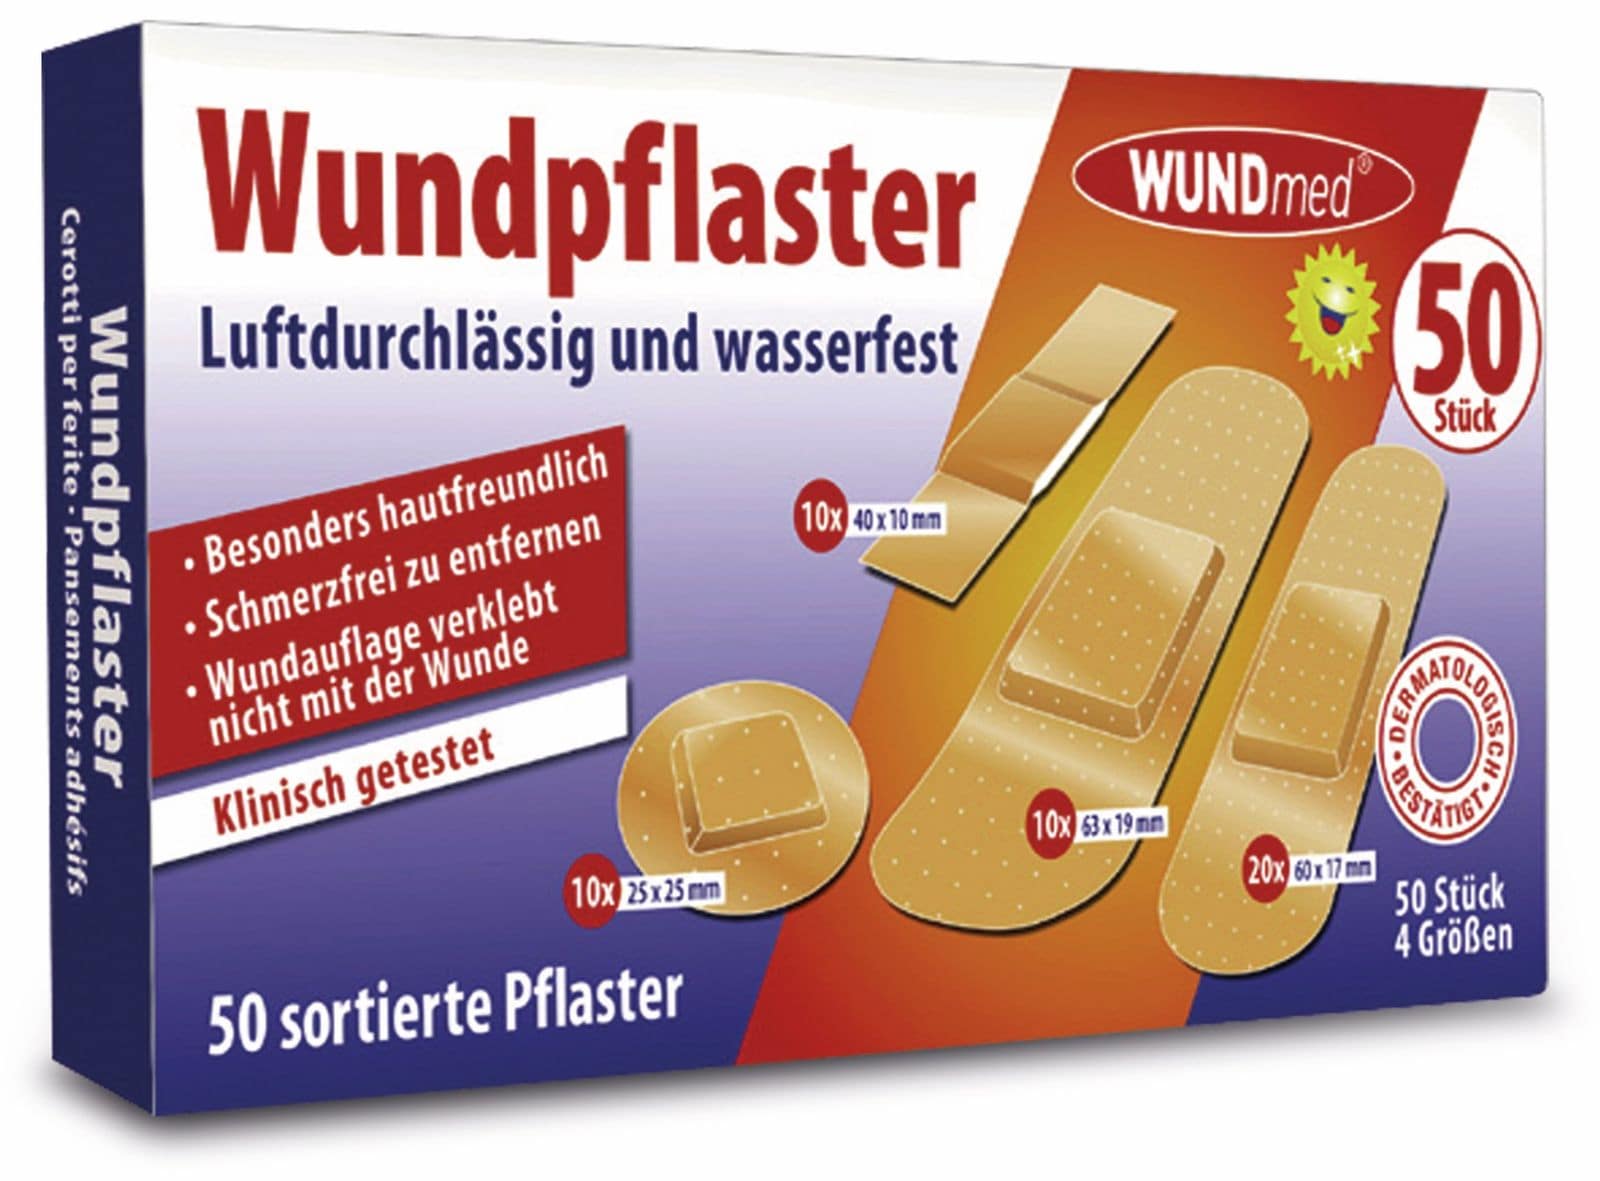 WUNDMED Pflaster-Set von Wundmed